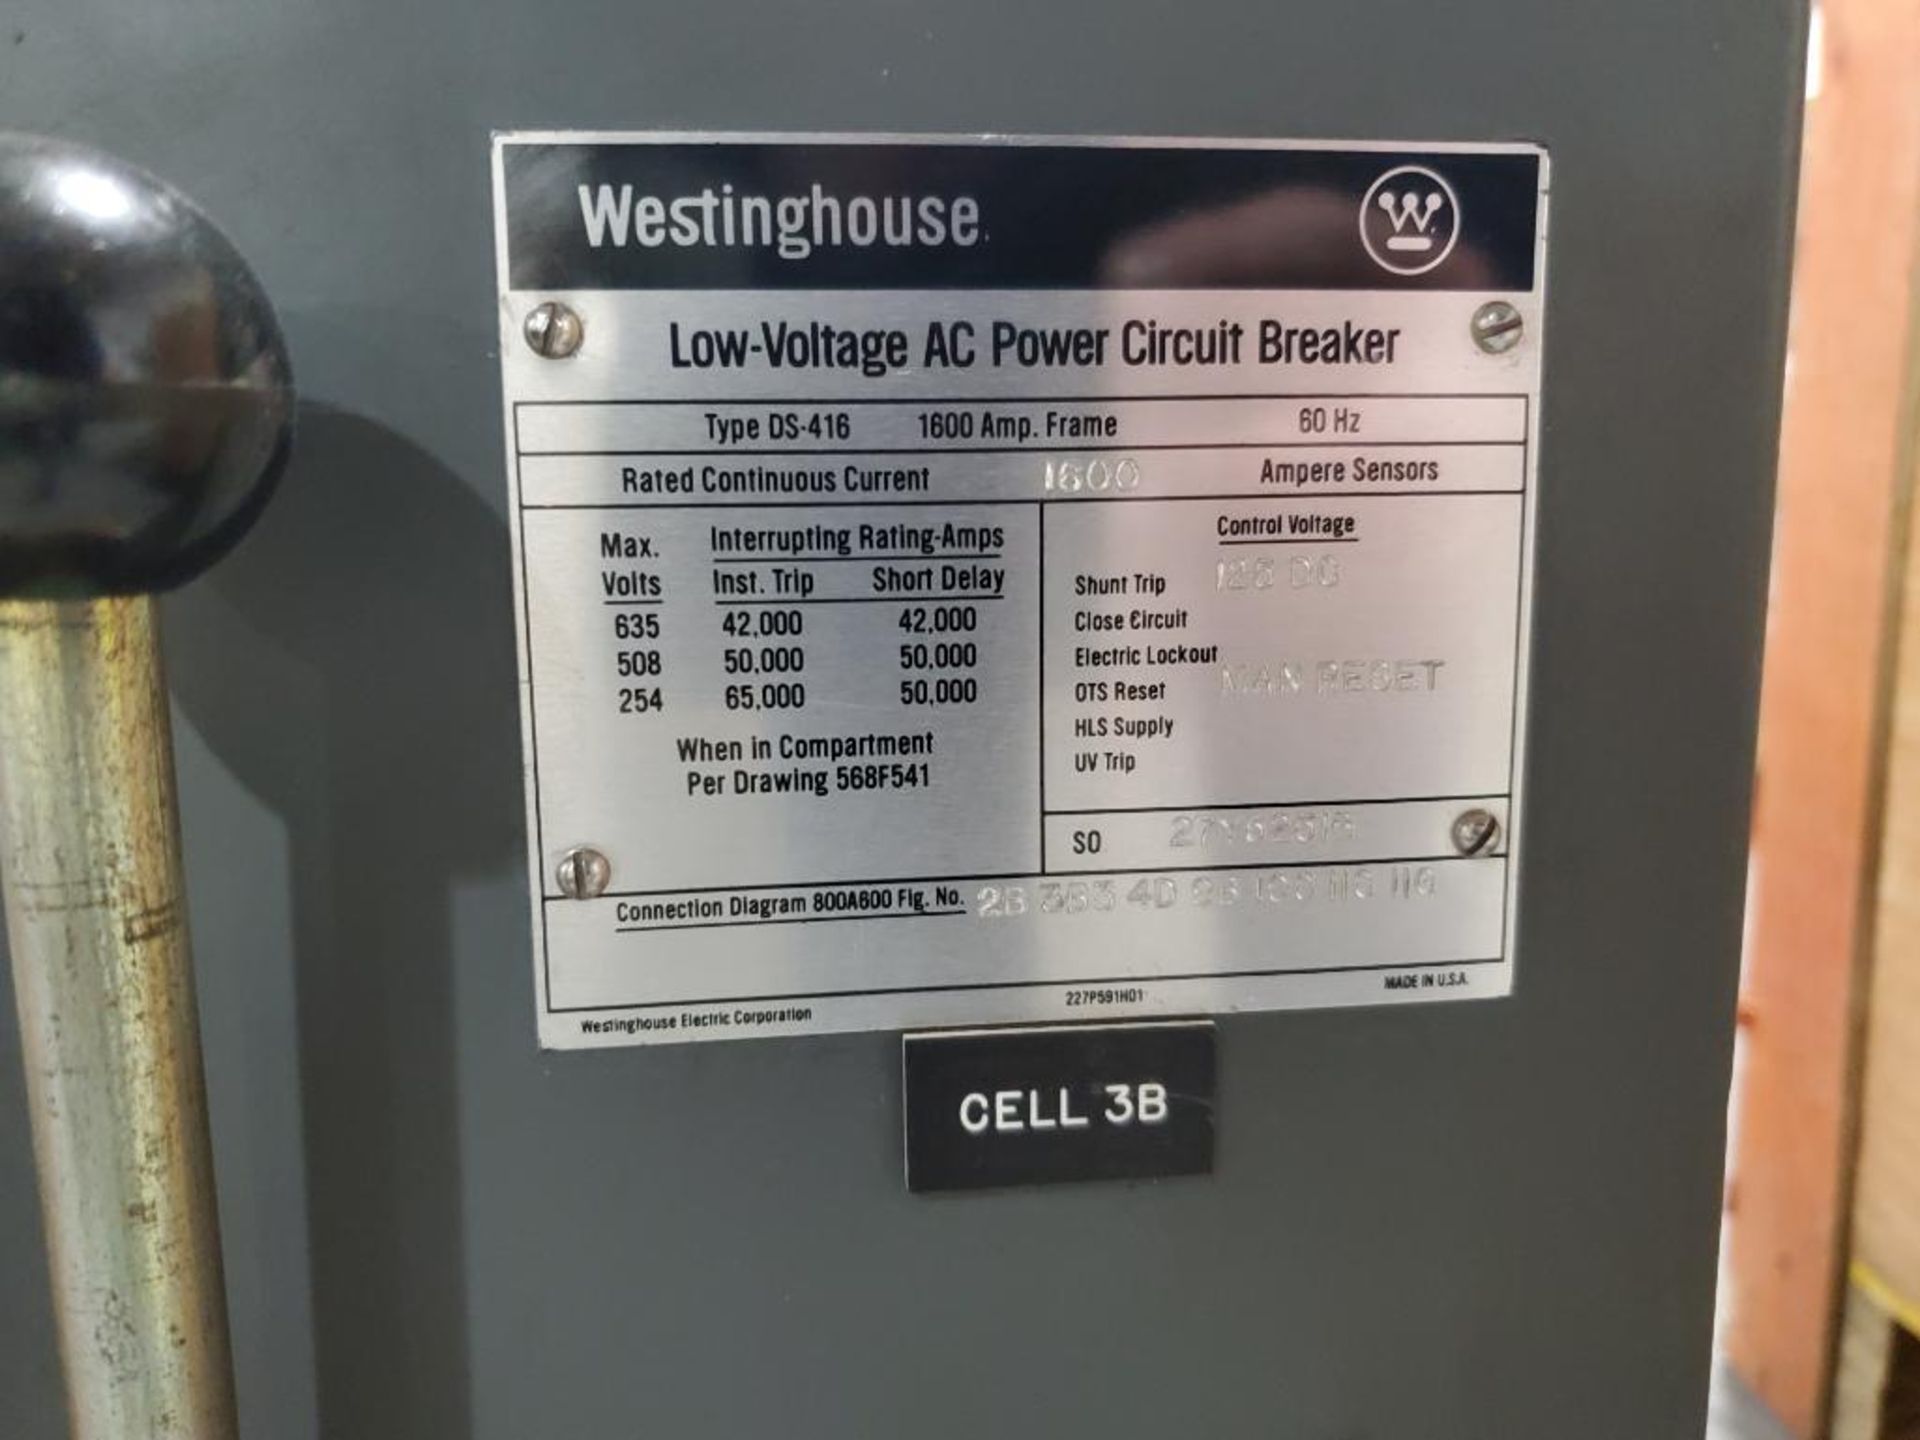 1600 amp Westinghouse Low Voltage AC Power Circuit Breaker. Type DS-416. - Bild 4 aus 9